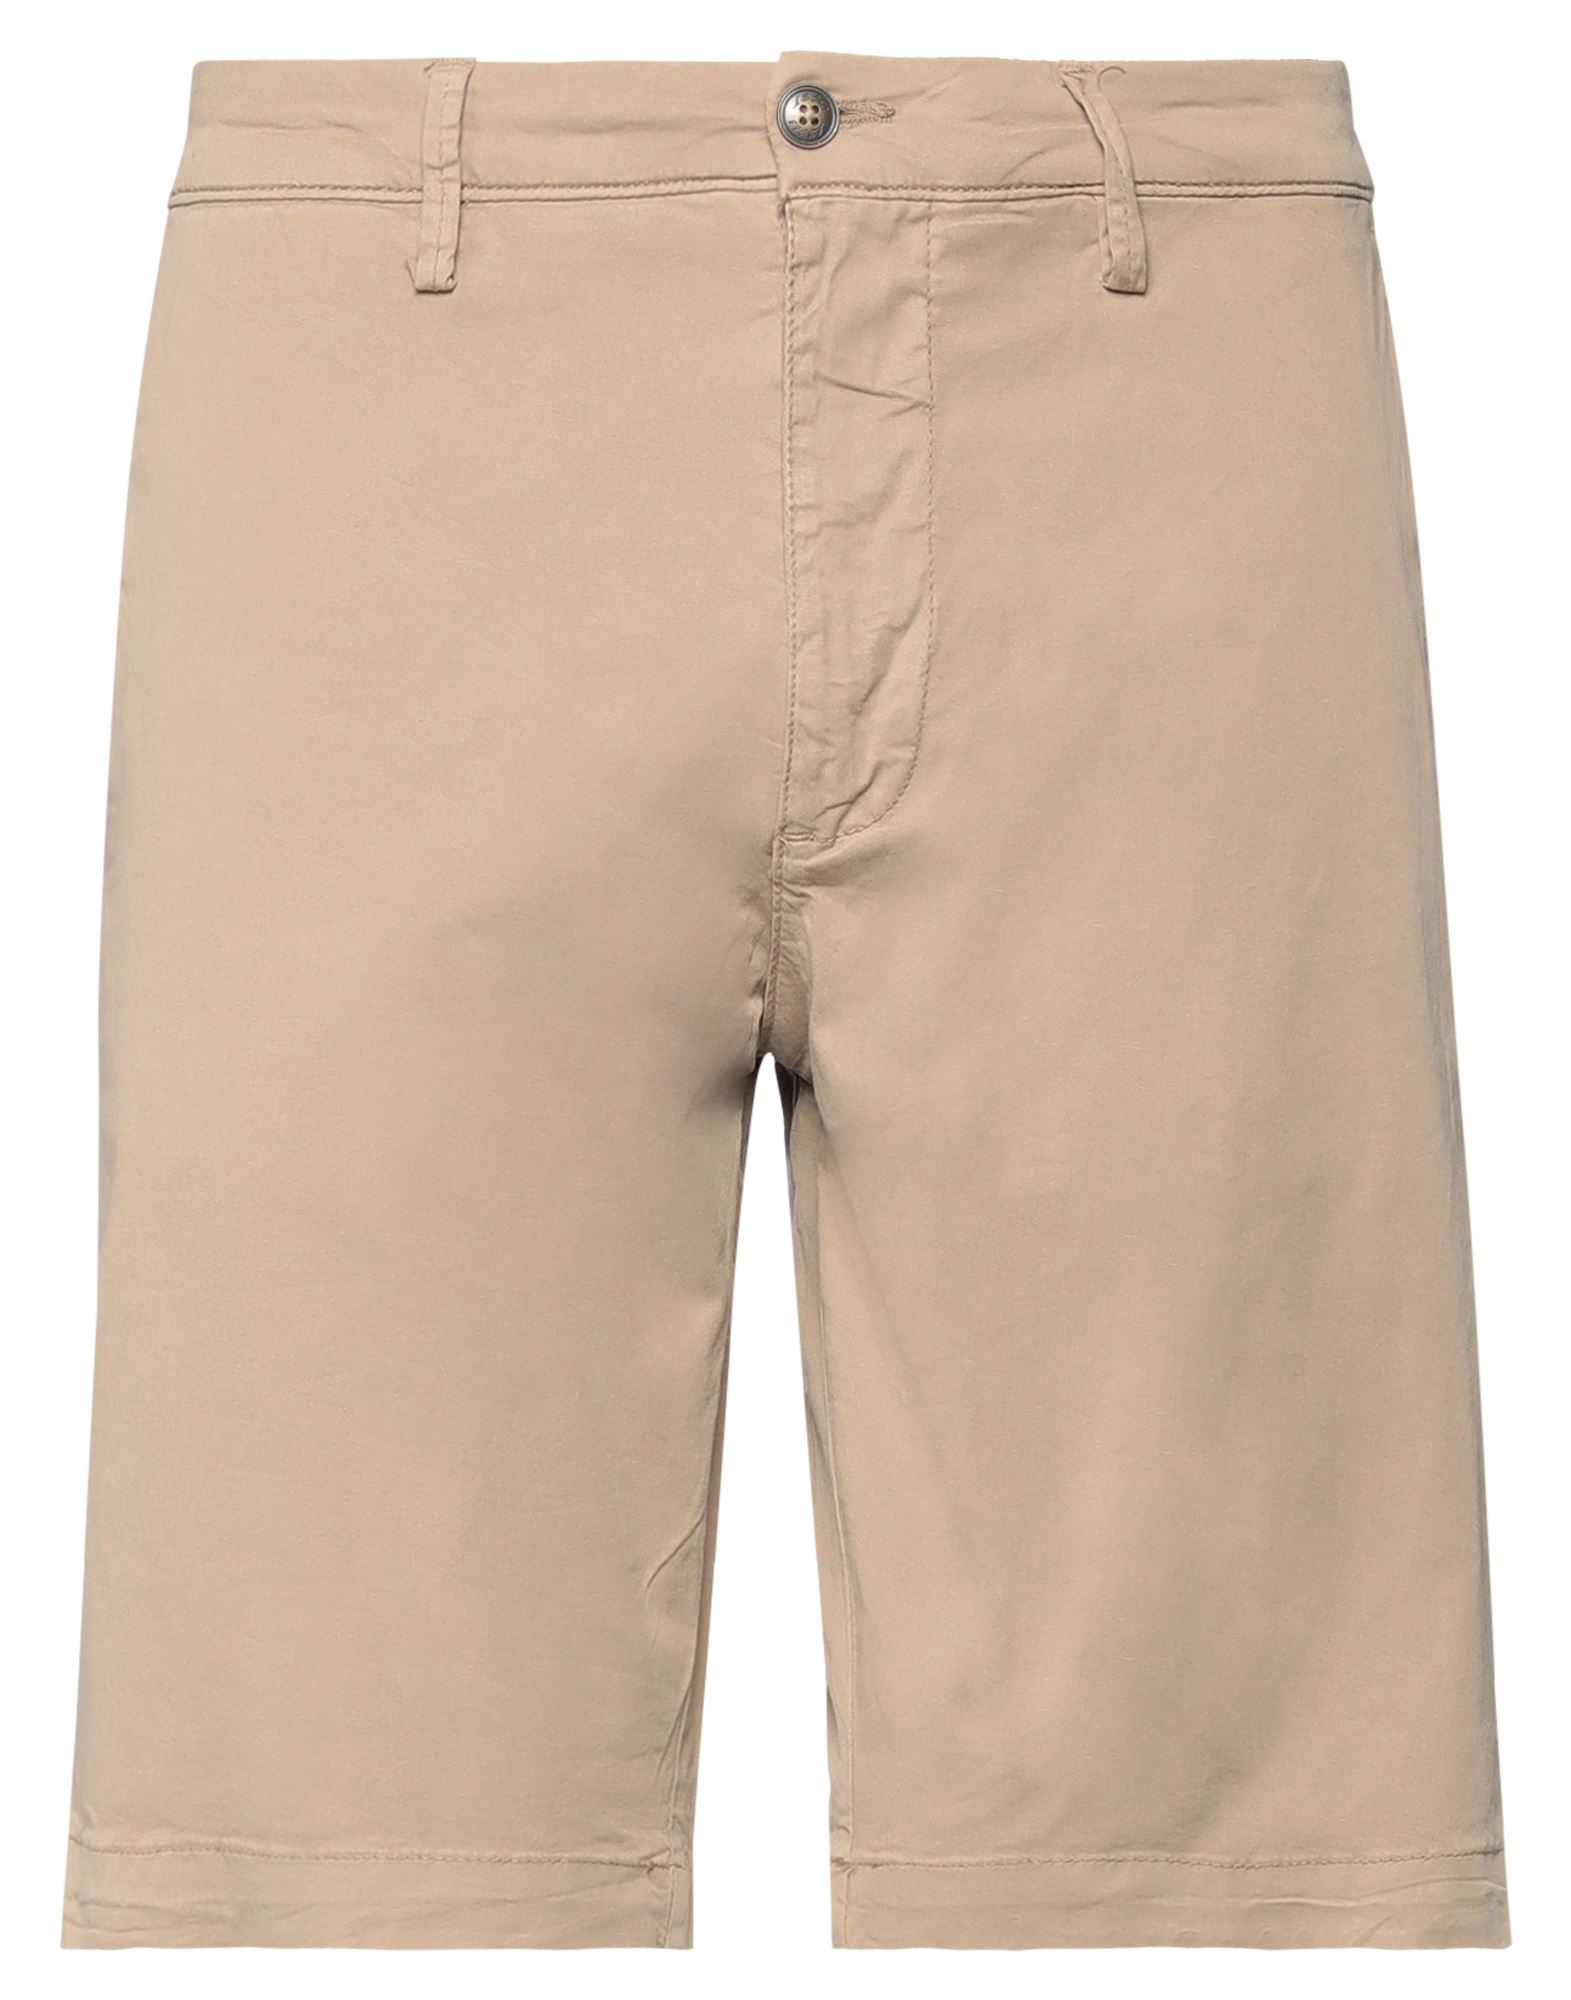 Alley Docks 963 Man Shorts & Bermuda Shorts Light Brown Size 36 Cotton, Elastane In Beige